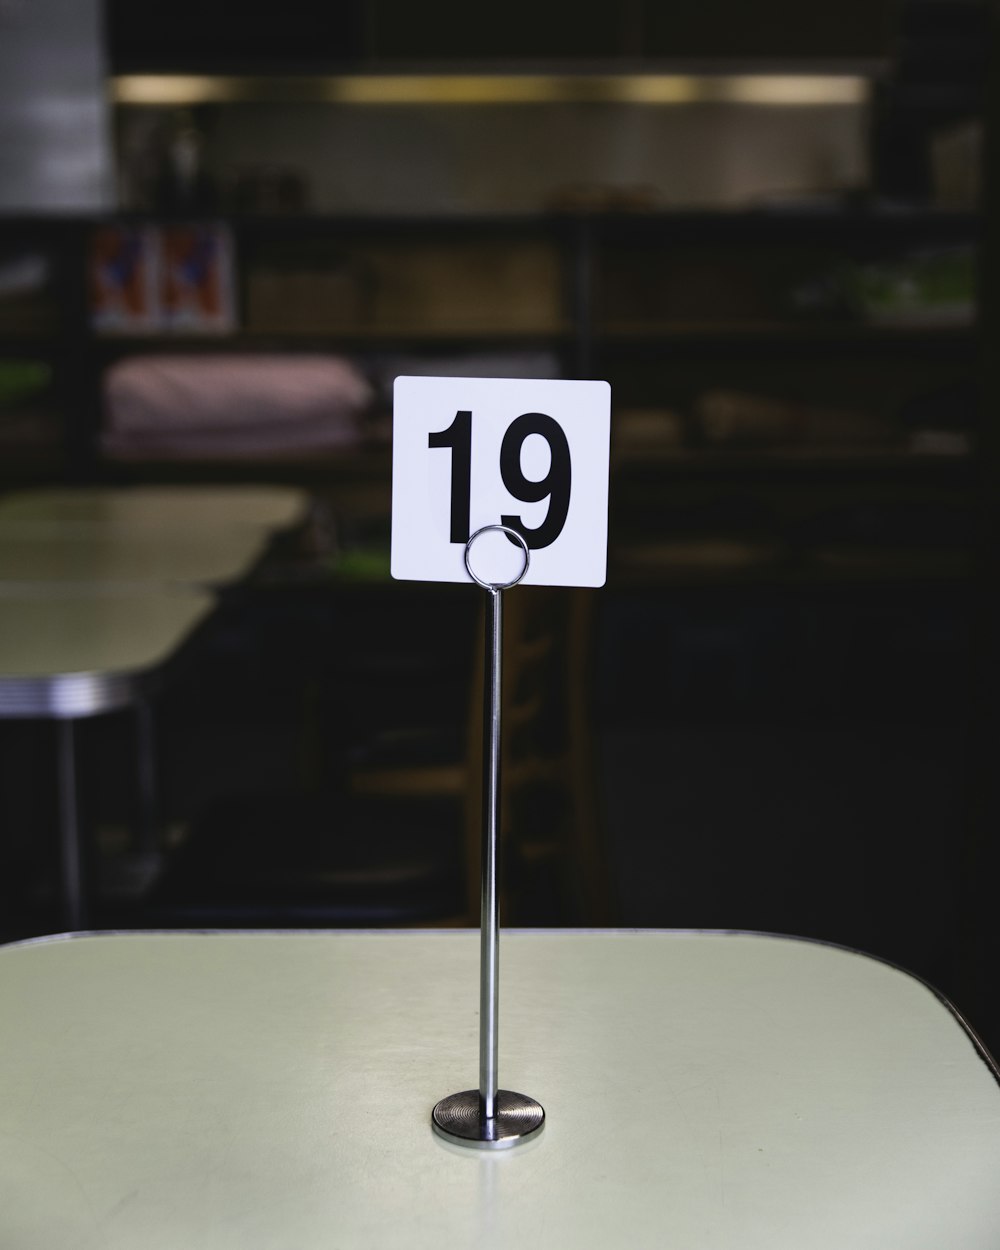 방 내 테이블에 테이블 번호 19